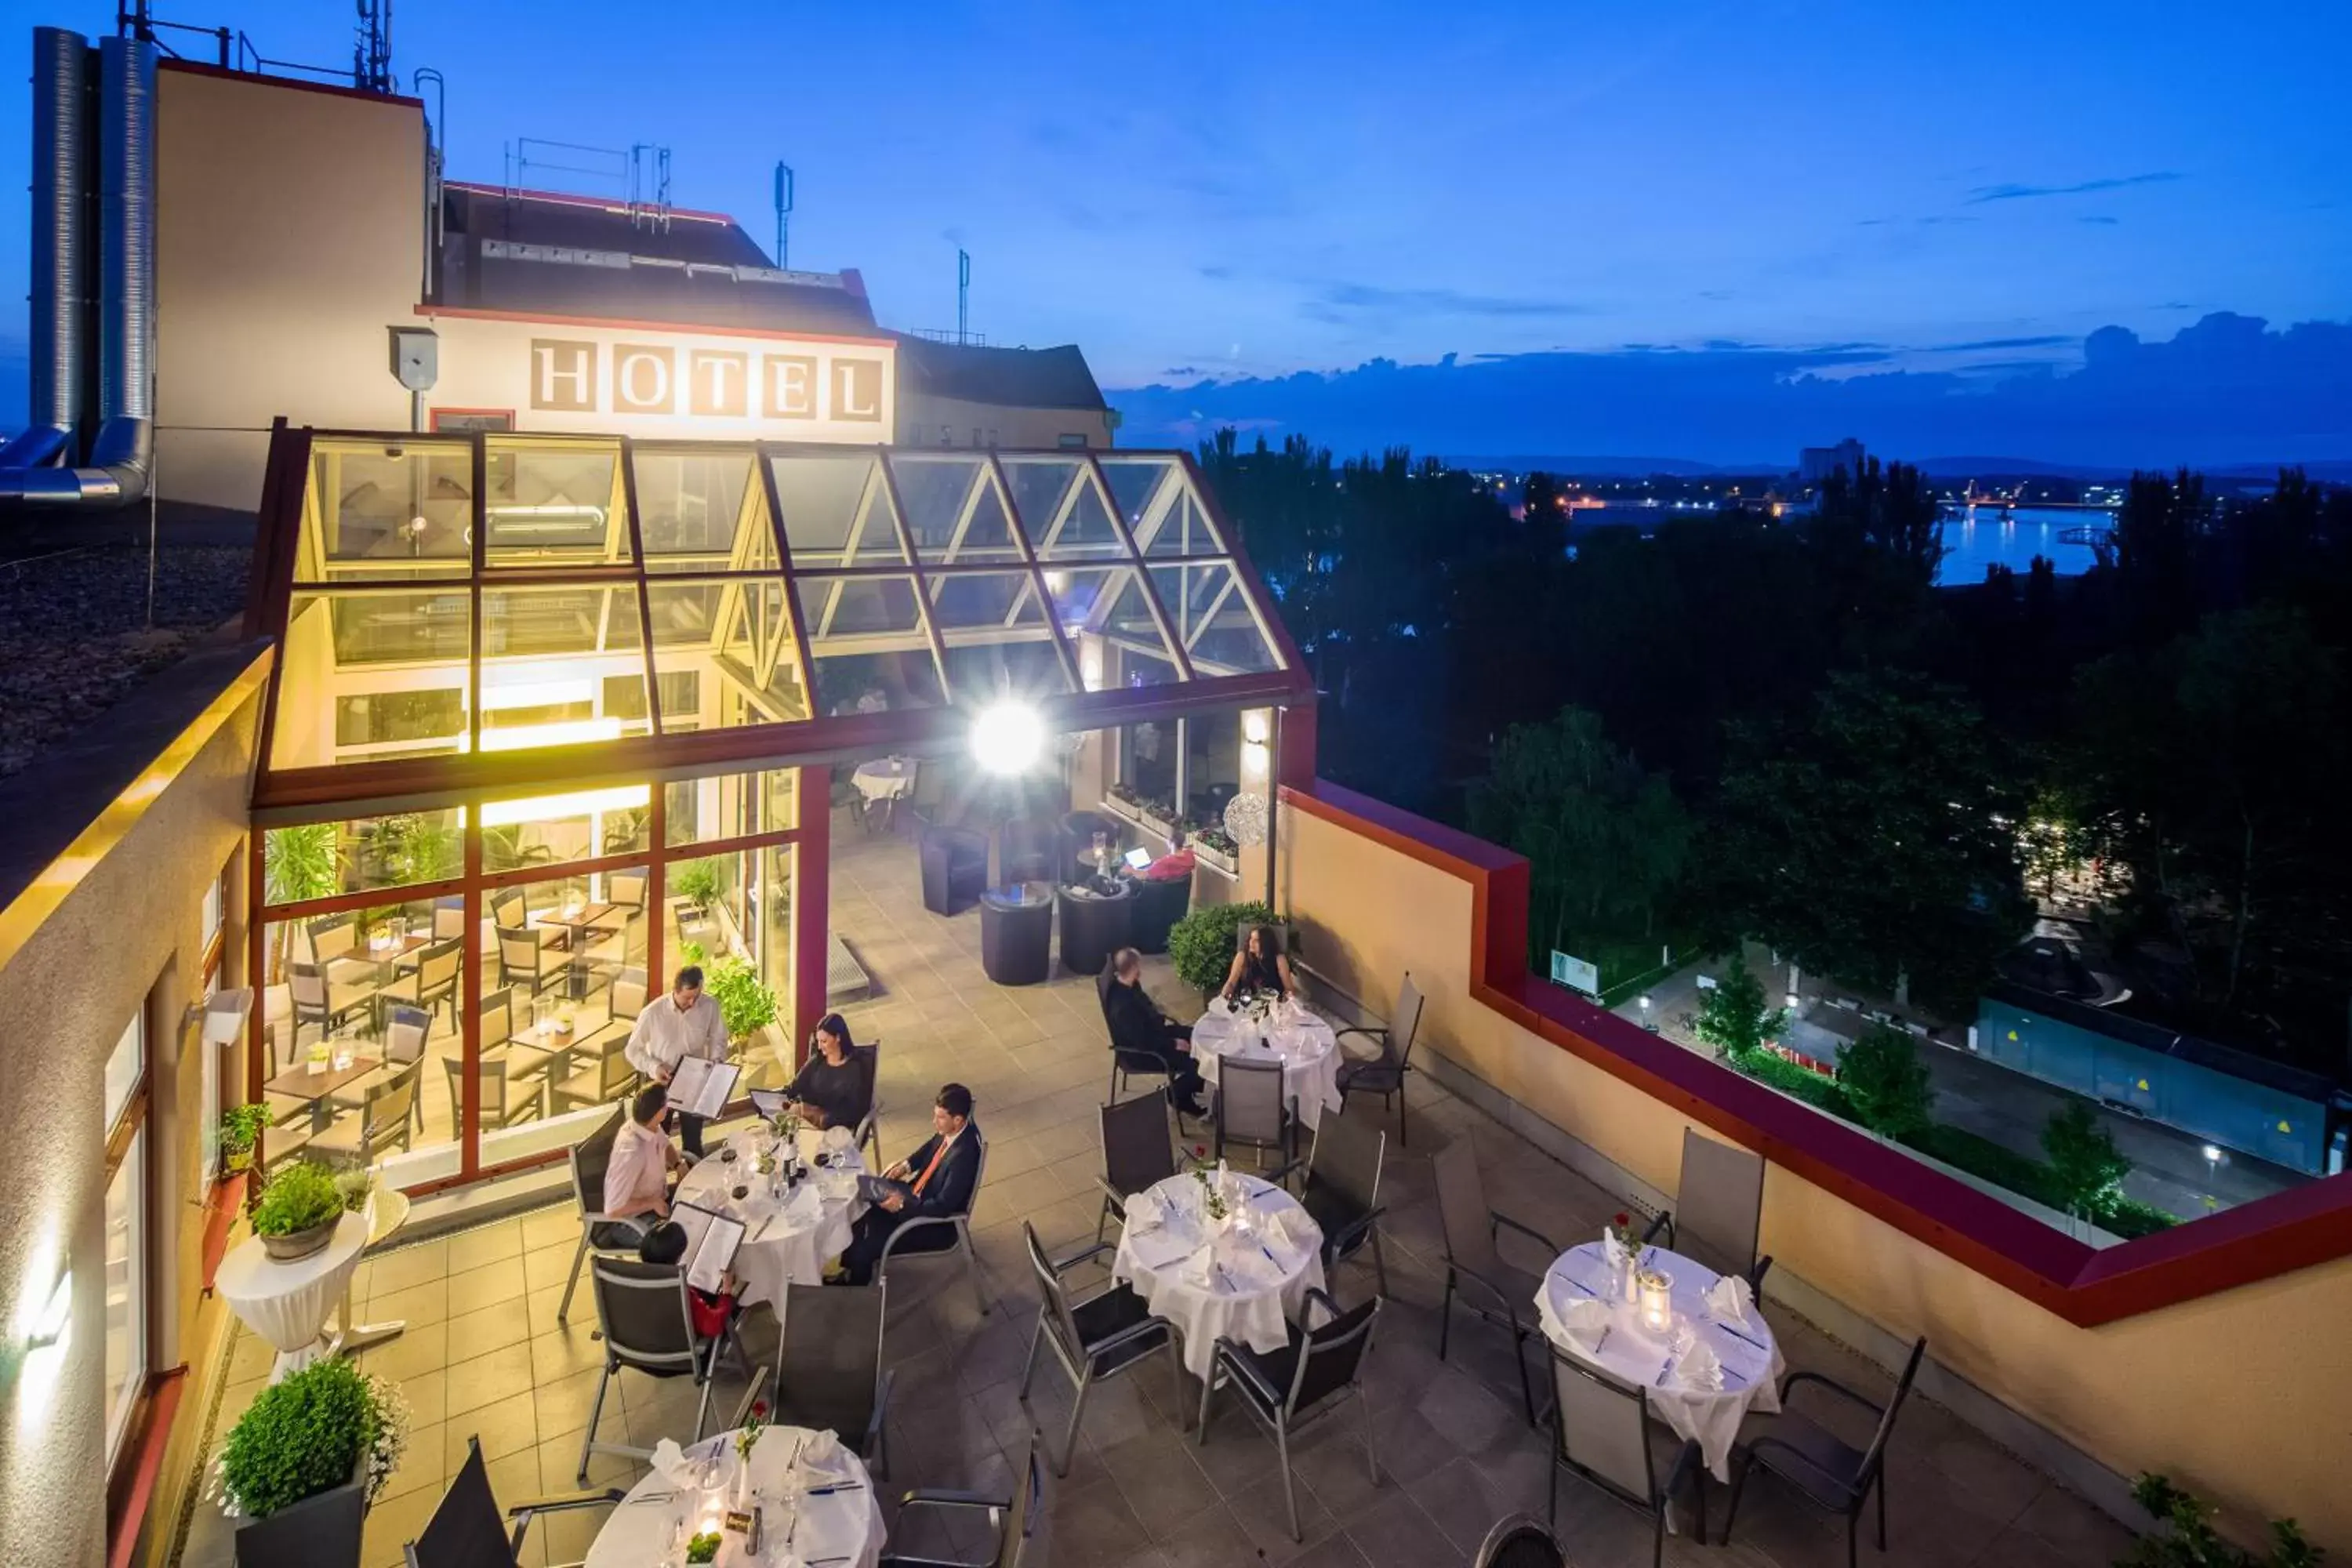 Restaurant/places to eat in Best Western Hotel Dreiländerbrücke Weil am Rhein / Basel